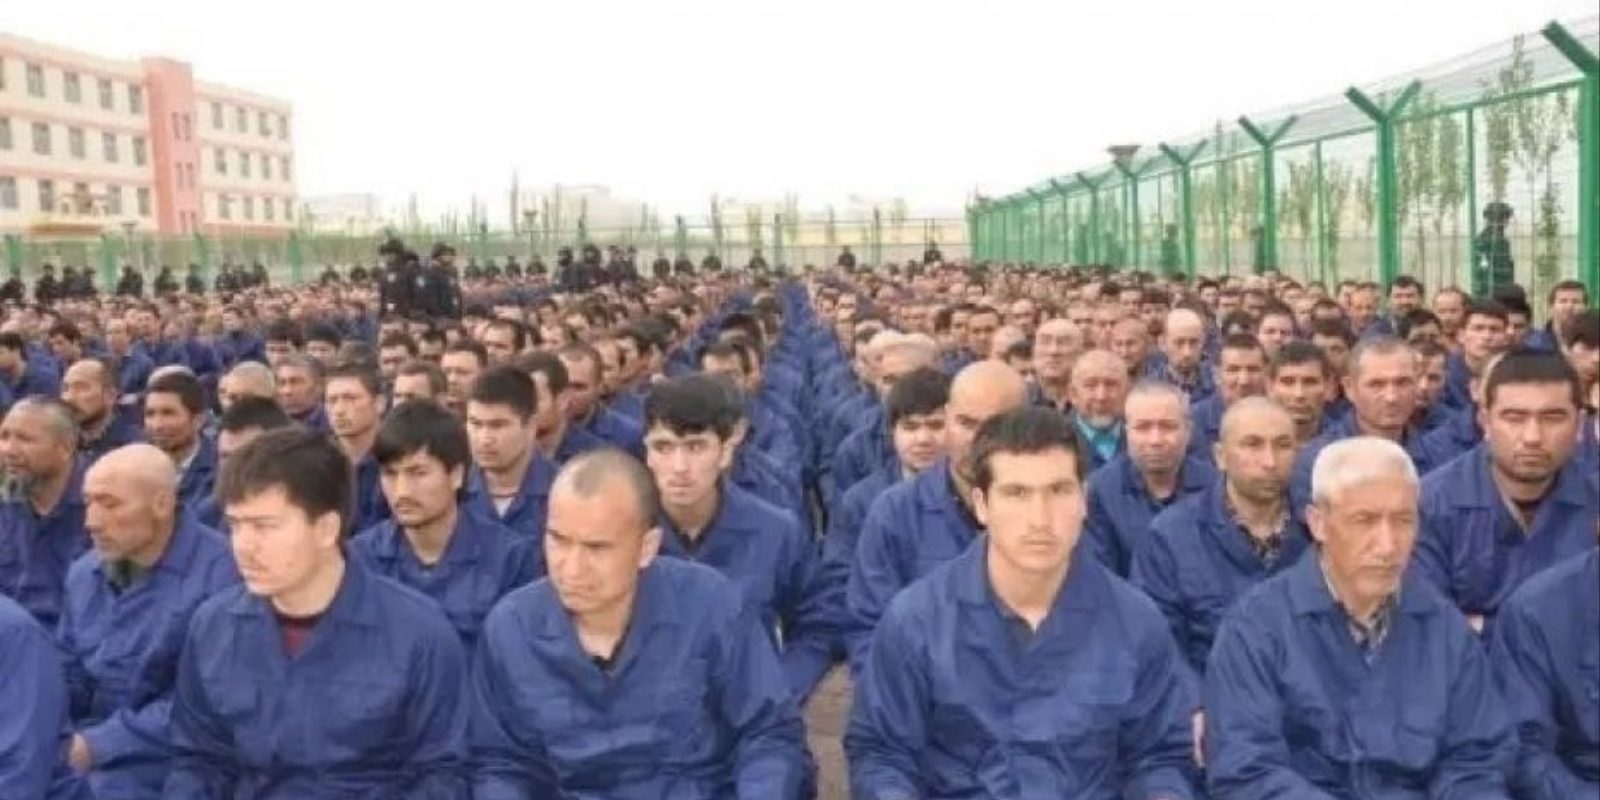 Des Ouïghours sont soumis au travail forcé. Il faut boycotter la Chine” –  Lignes d'horizon